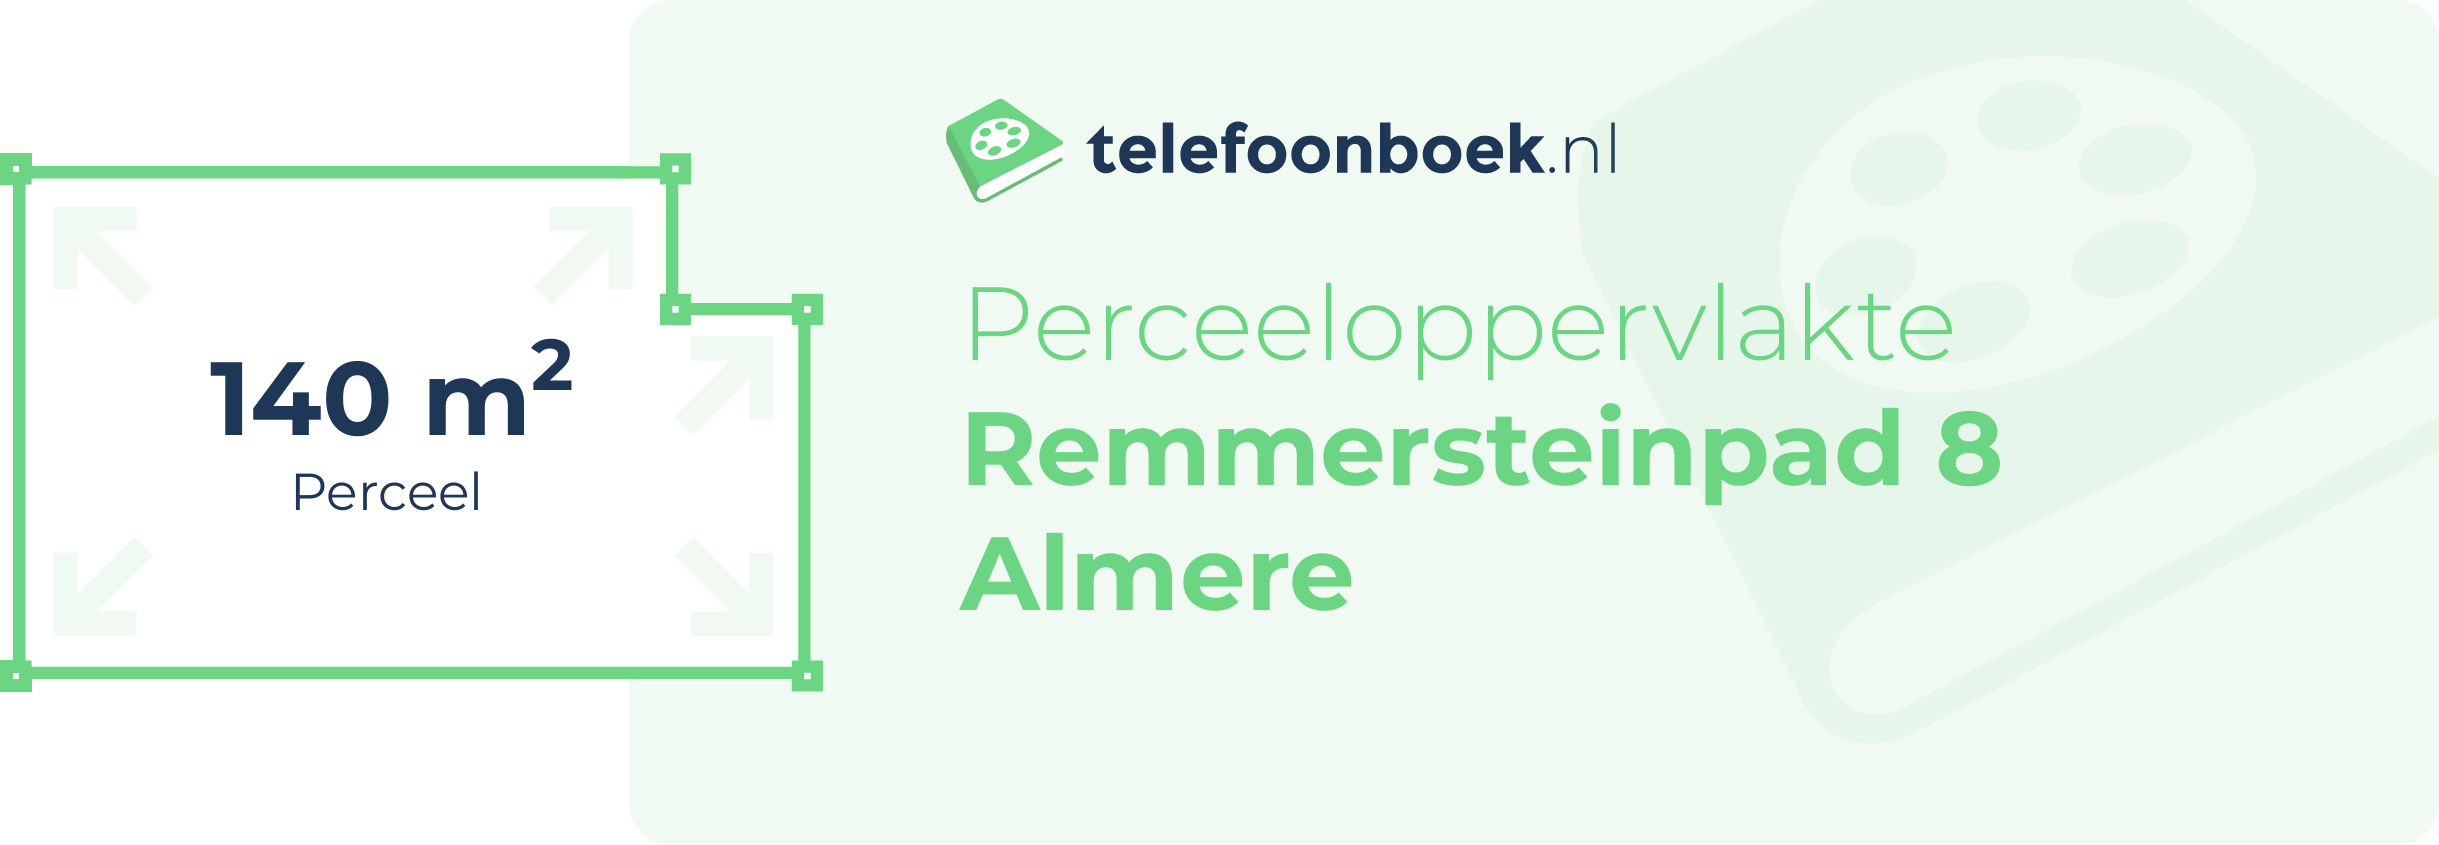 Perceeloppervlakte Remmersteinpad 8 Almere